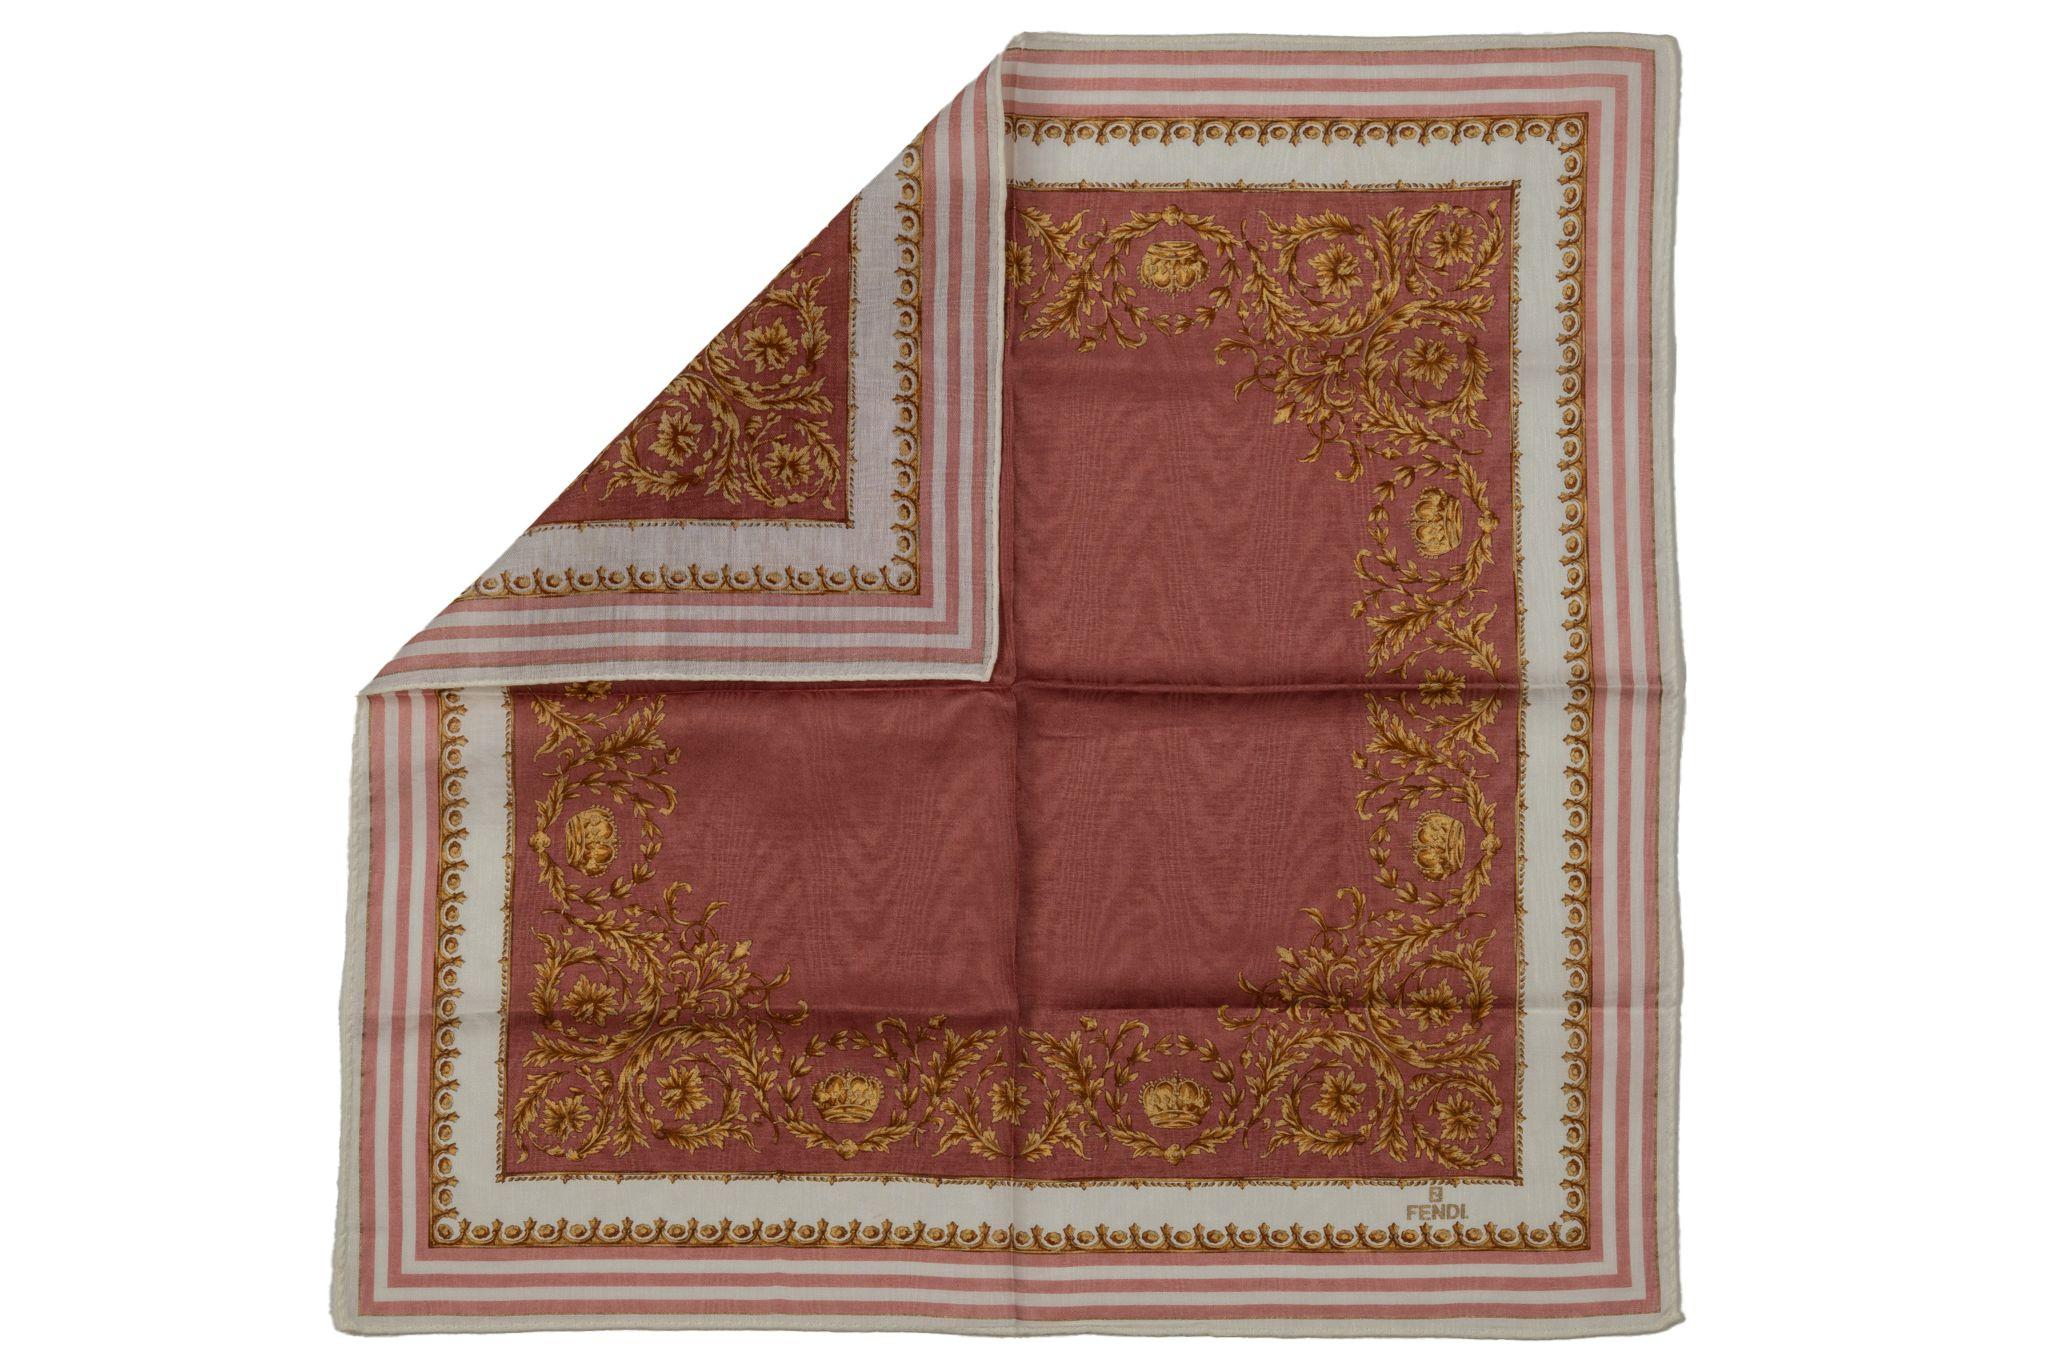 Gavroche en coton neuf de Fendi, design blanc et rose avec motif baroque doré. 
Pas de Label.